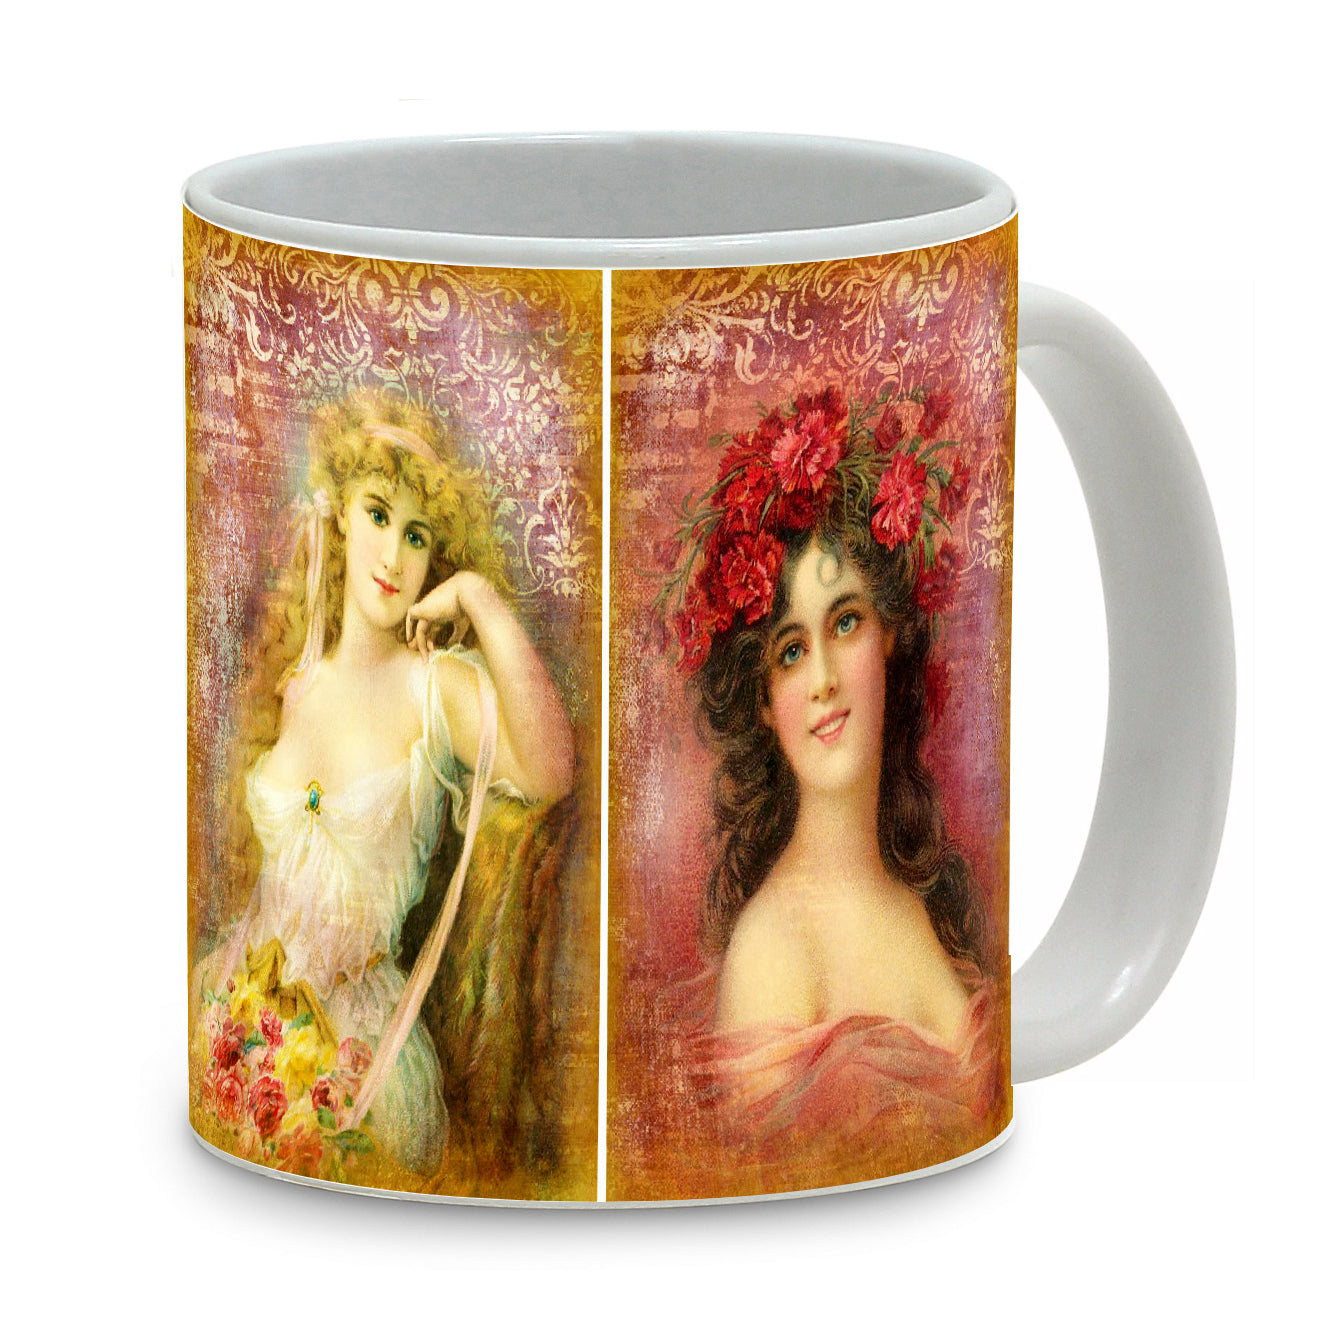 SUBLIMART: Damas - Mug featuring a beautiful 18th Century Damas - Artistica.com